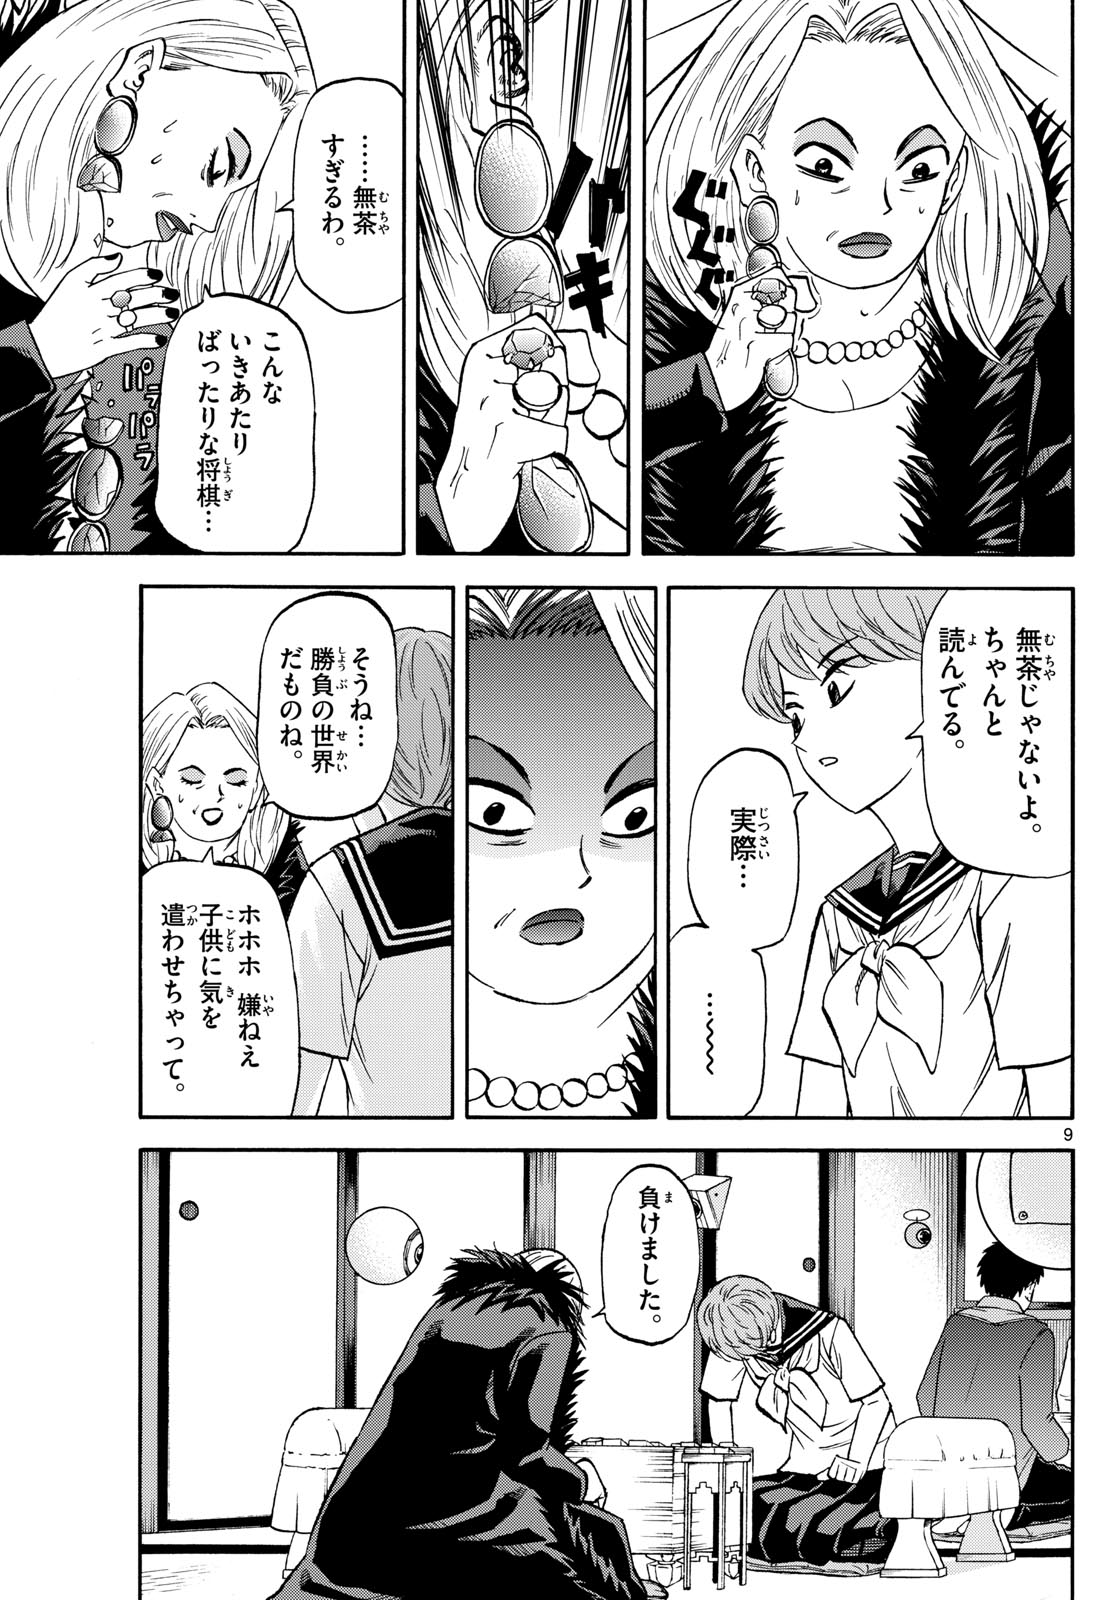 Tatsu to Ichigo - Chapter 192 - Page 9